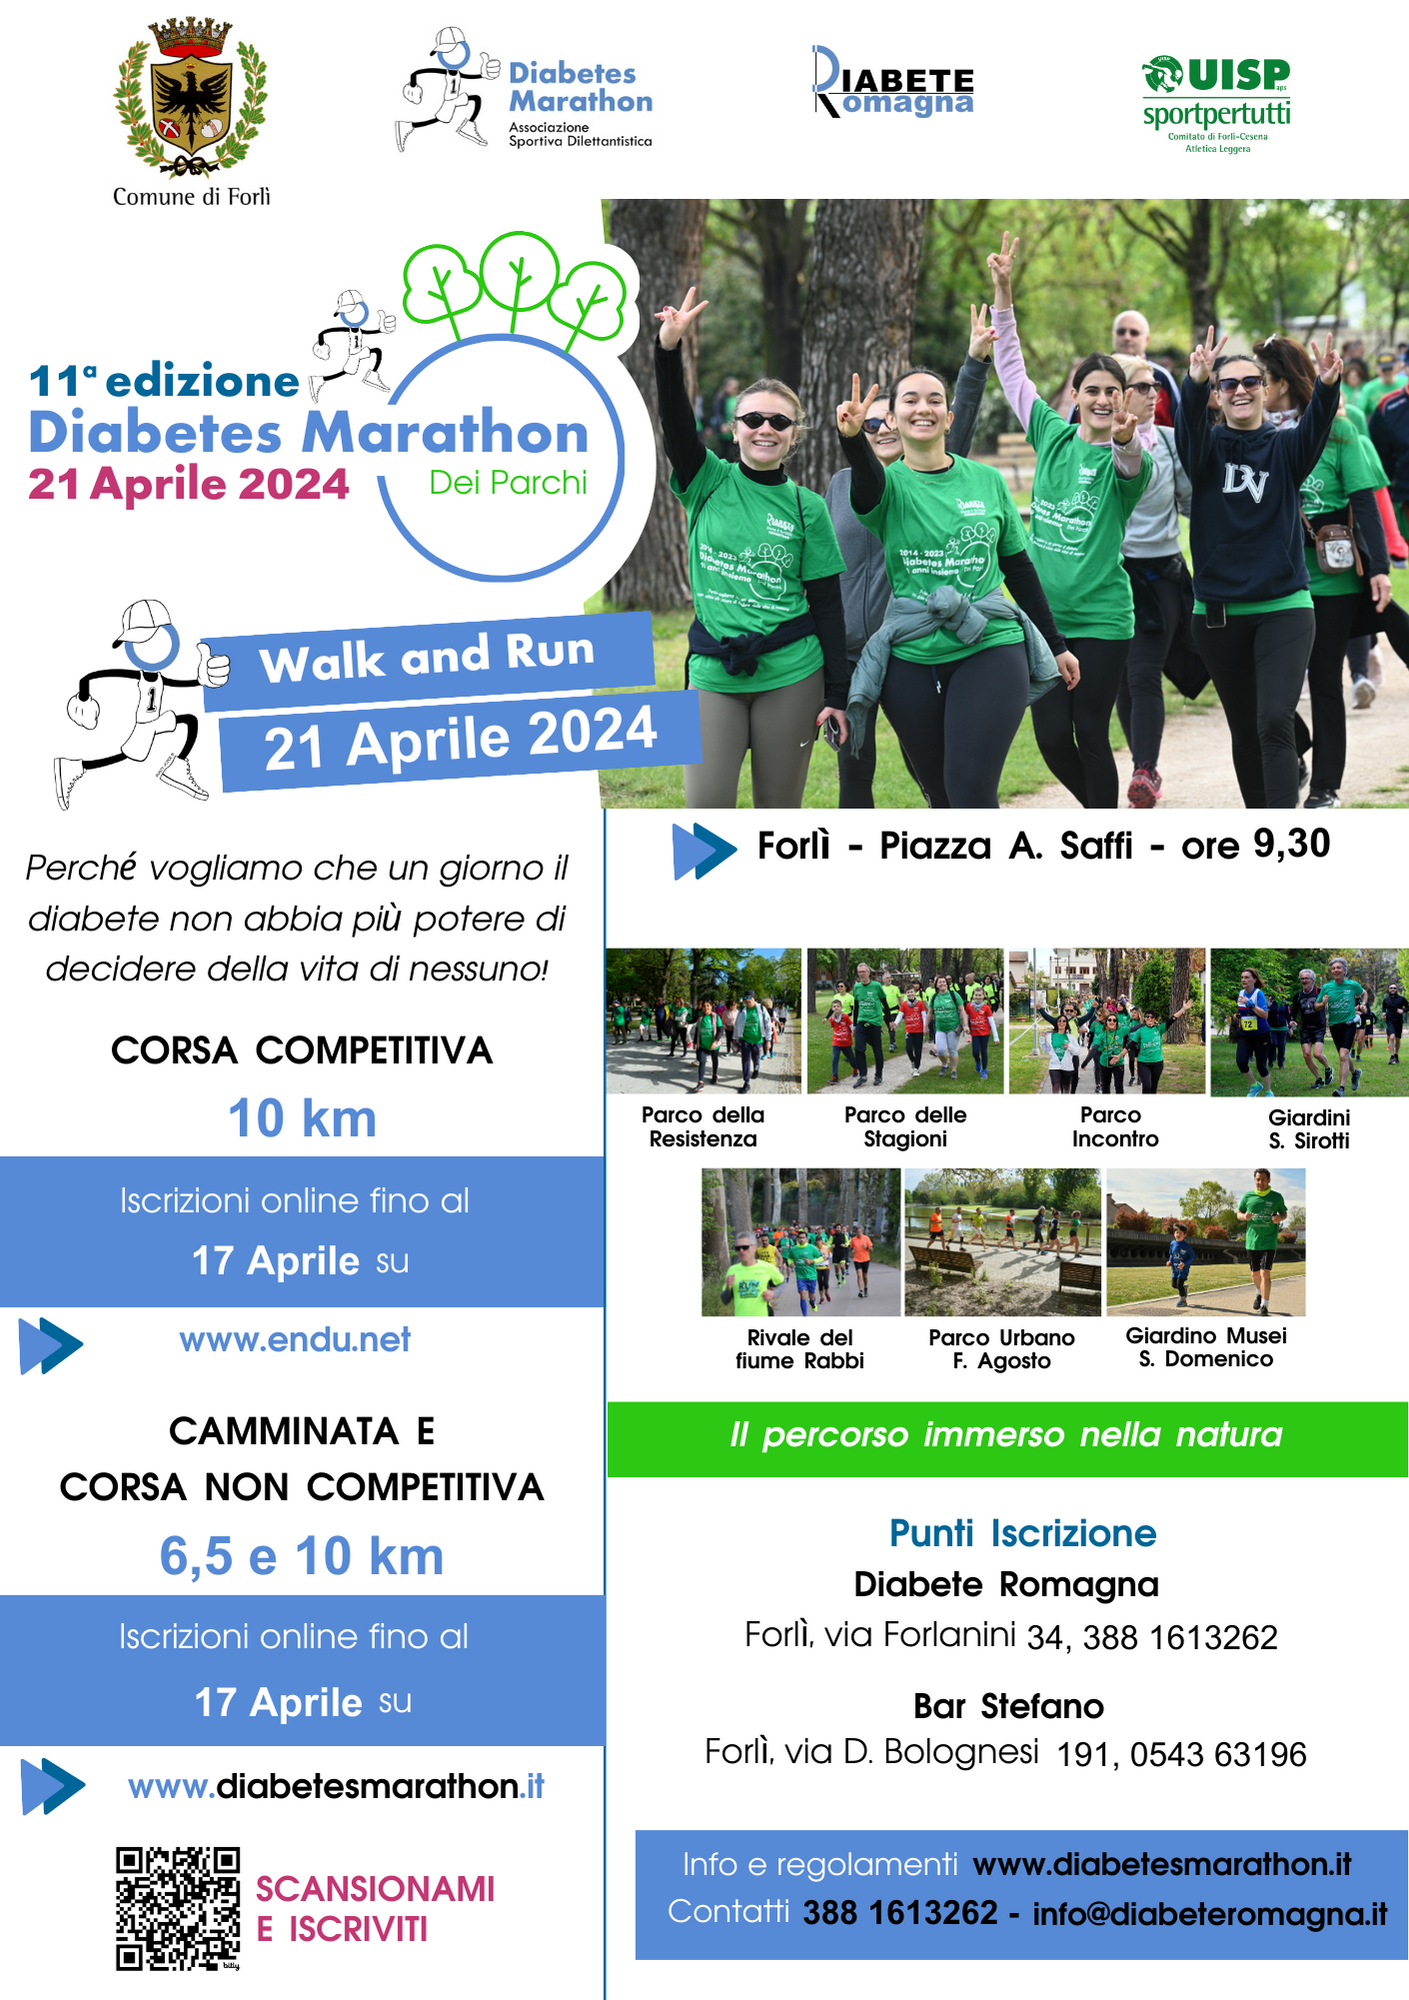 Diabetes Marathon “dei Parchi” – 21 Aprile 2024 In Piazza A. Saffi, Forlì